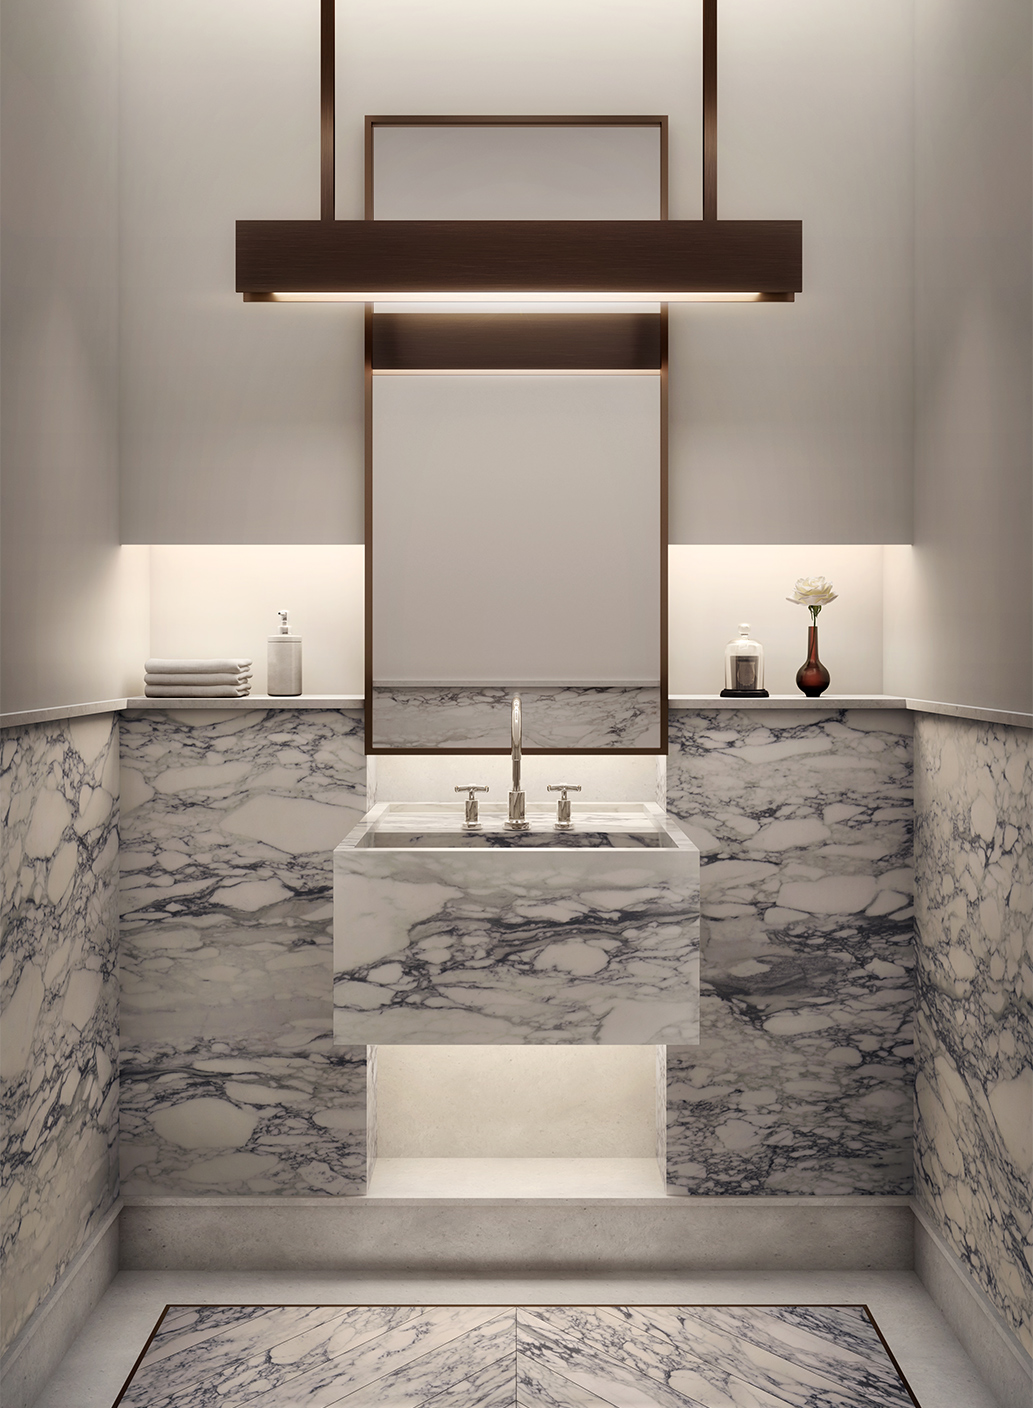 Bathroom vanity made of marble